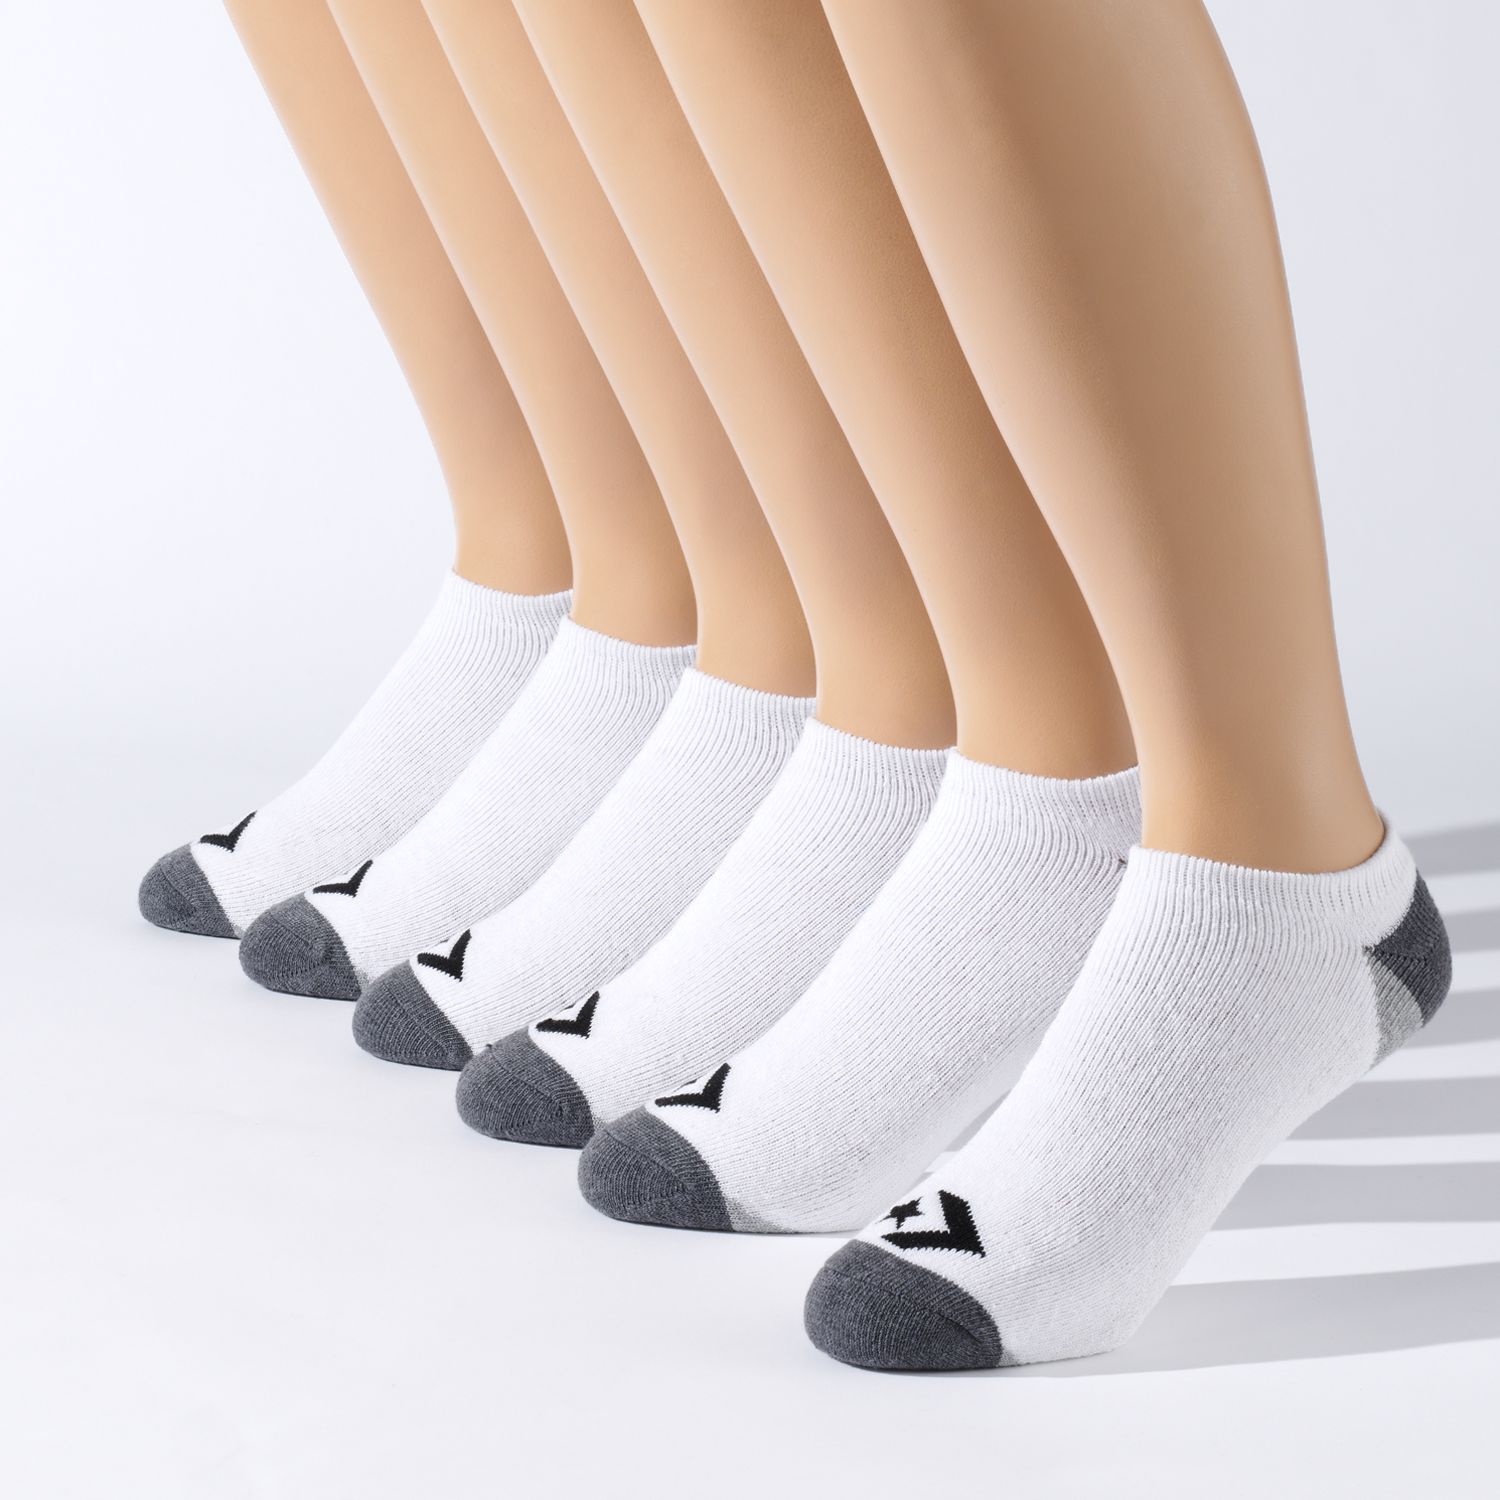 converse socks mens